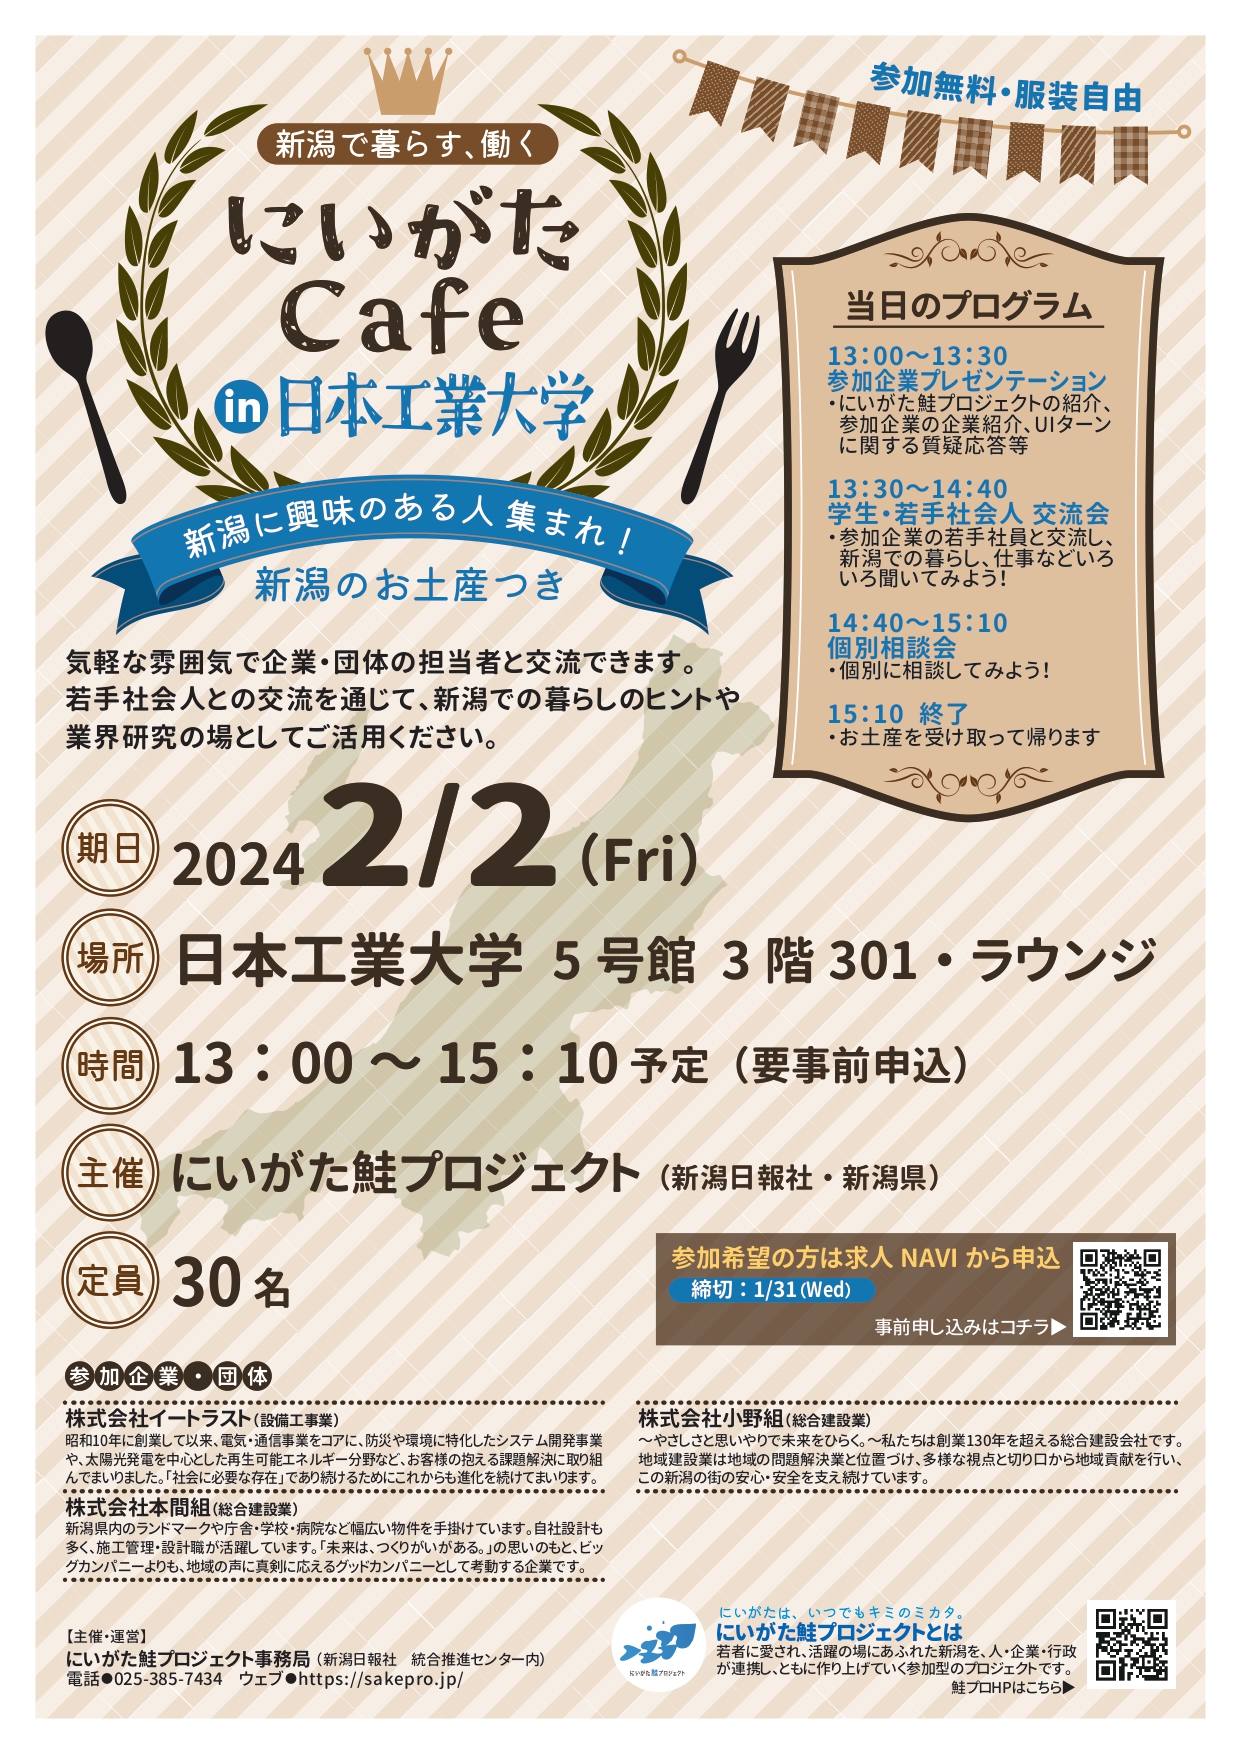 2/2 にいがた Cafe’in 日本工業大学に参加します